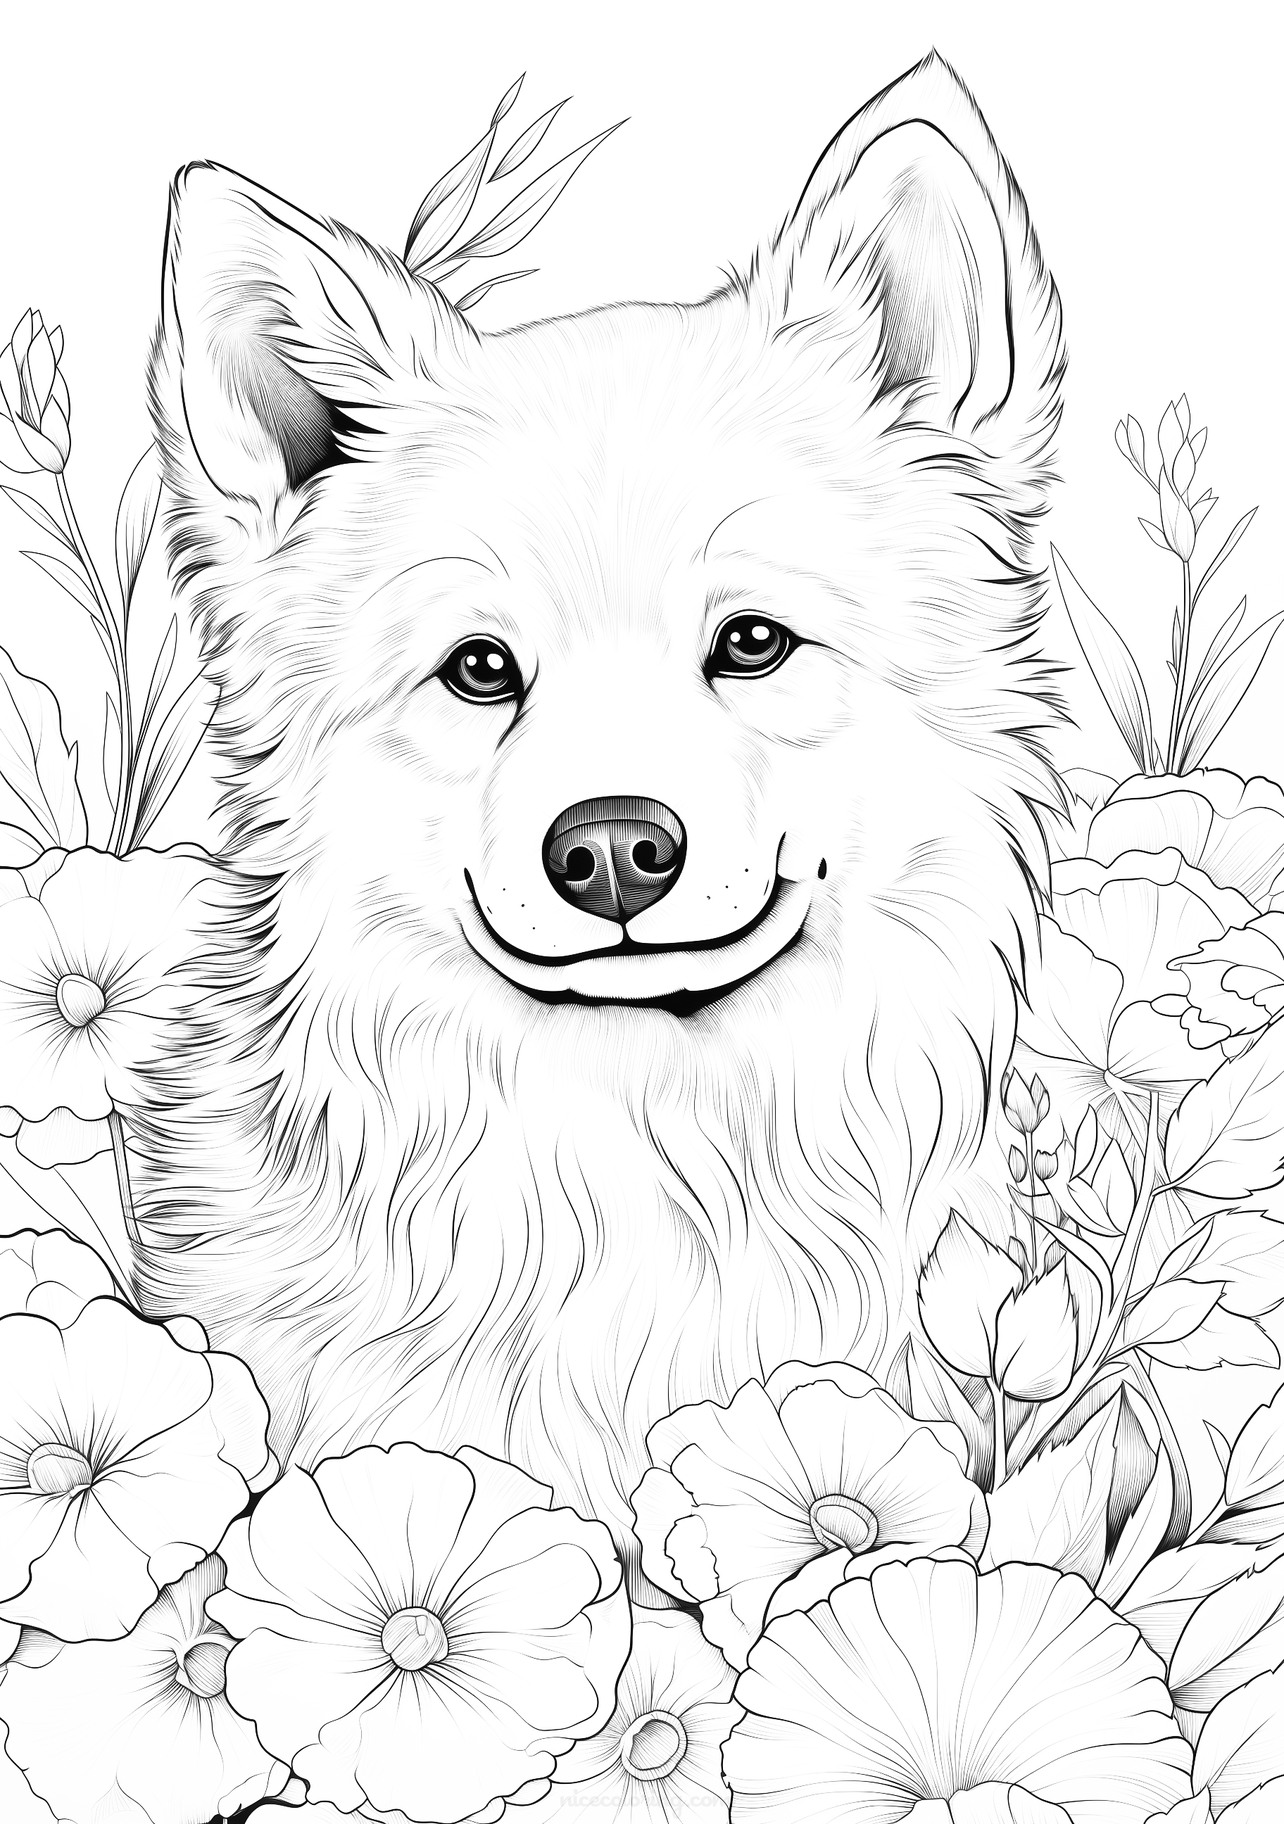 Pokoloruj zachwyconego psa wśród kwiatów